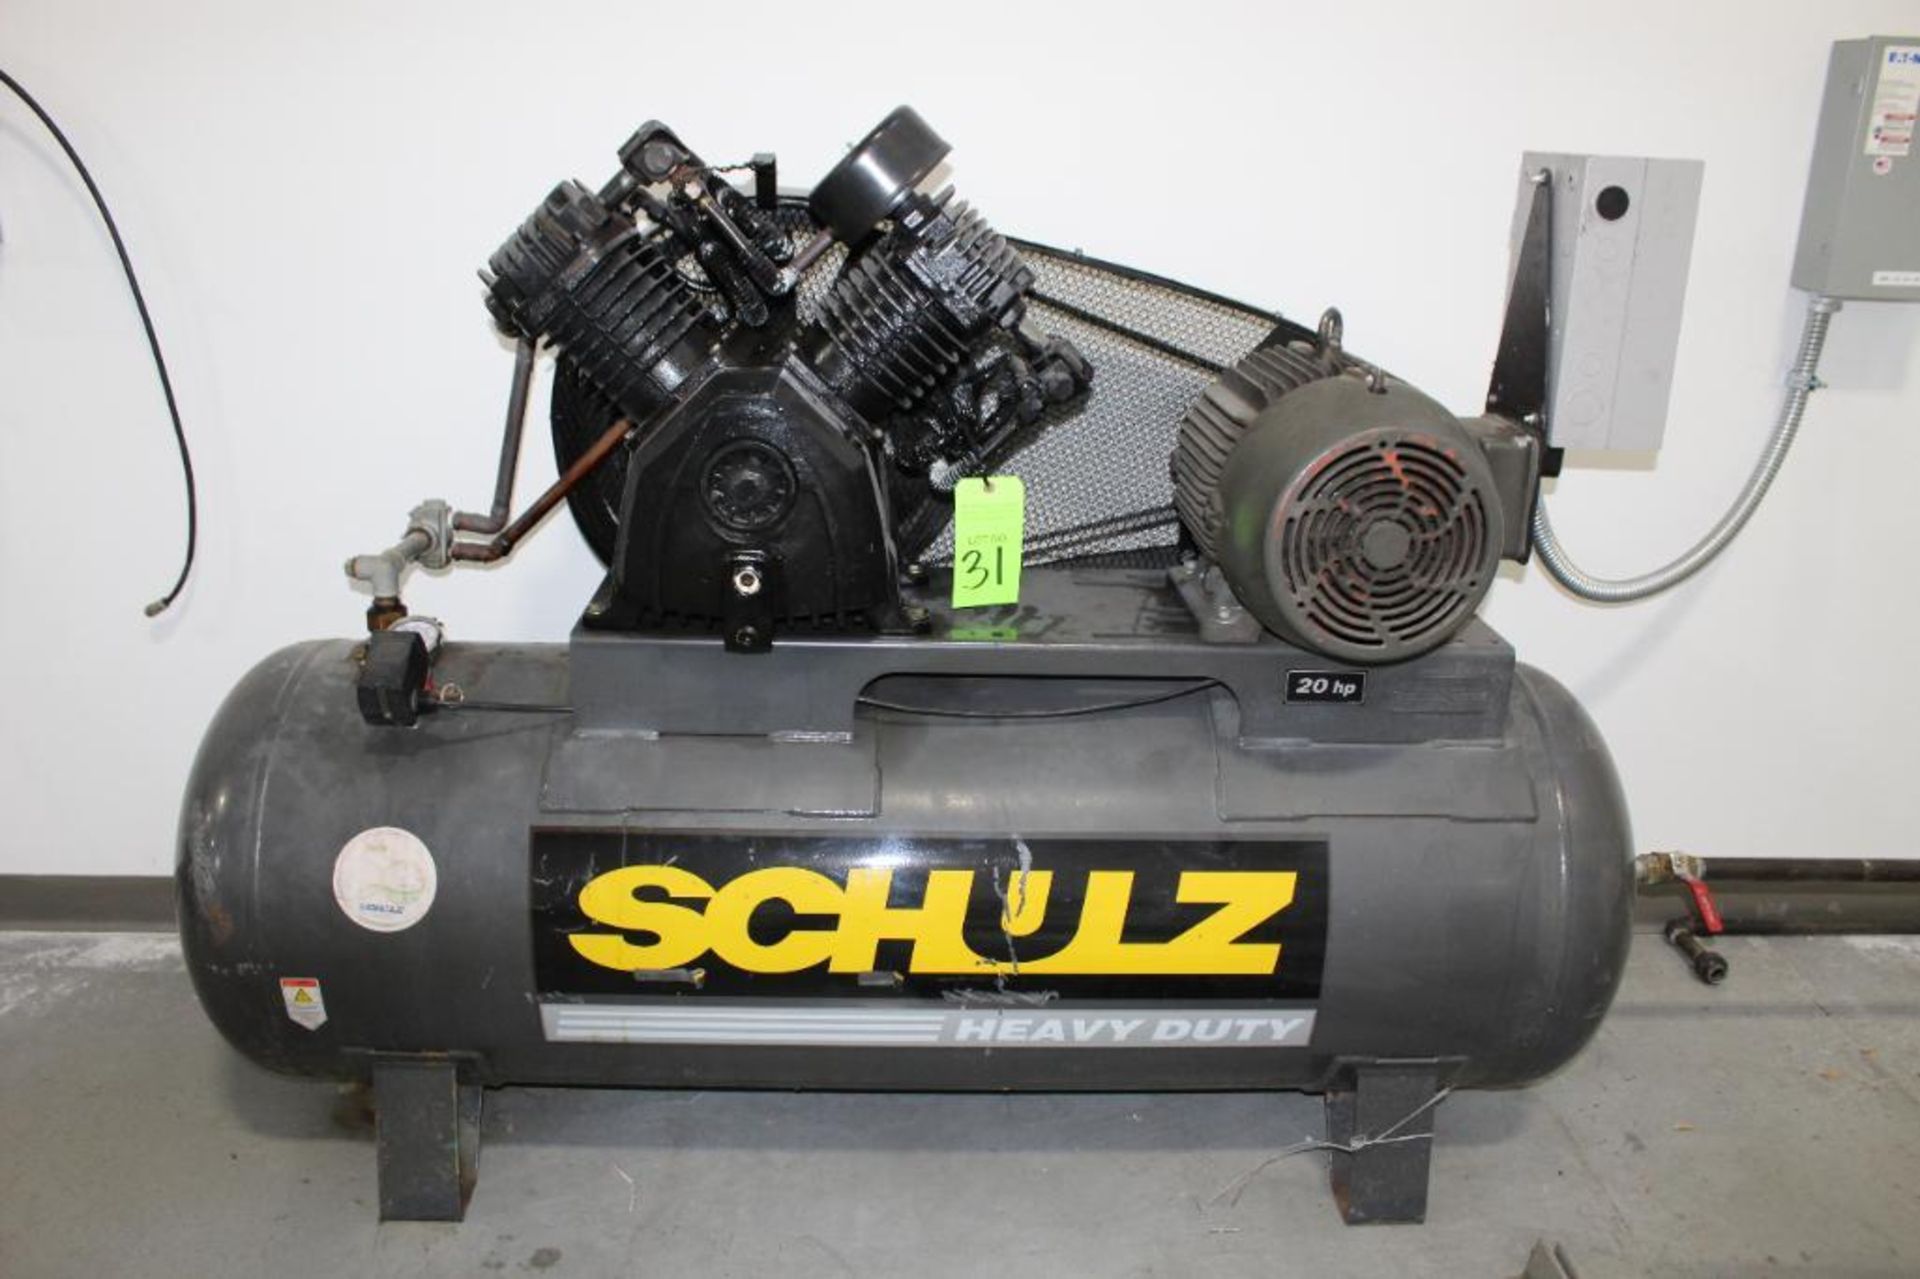 Schultz Air Compresson